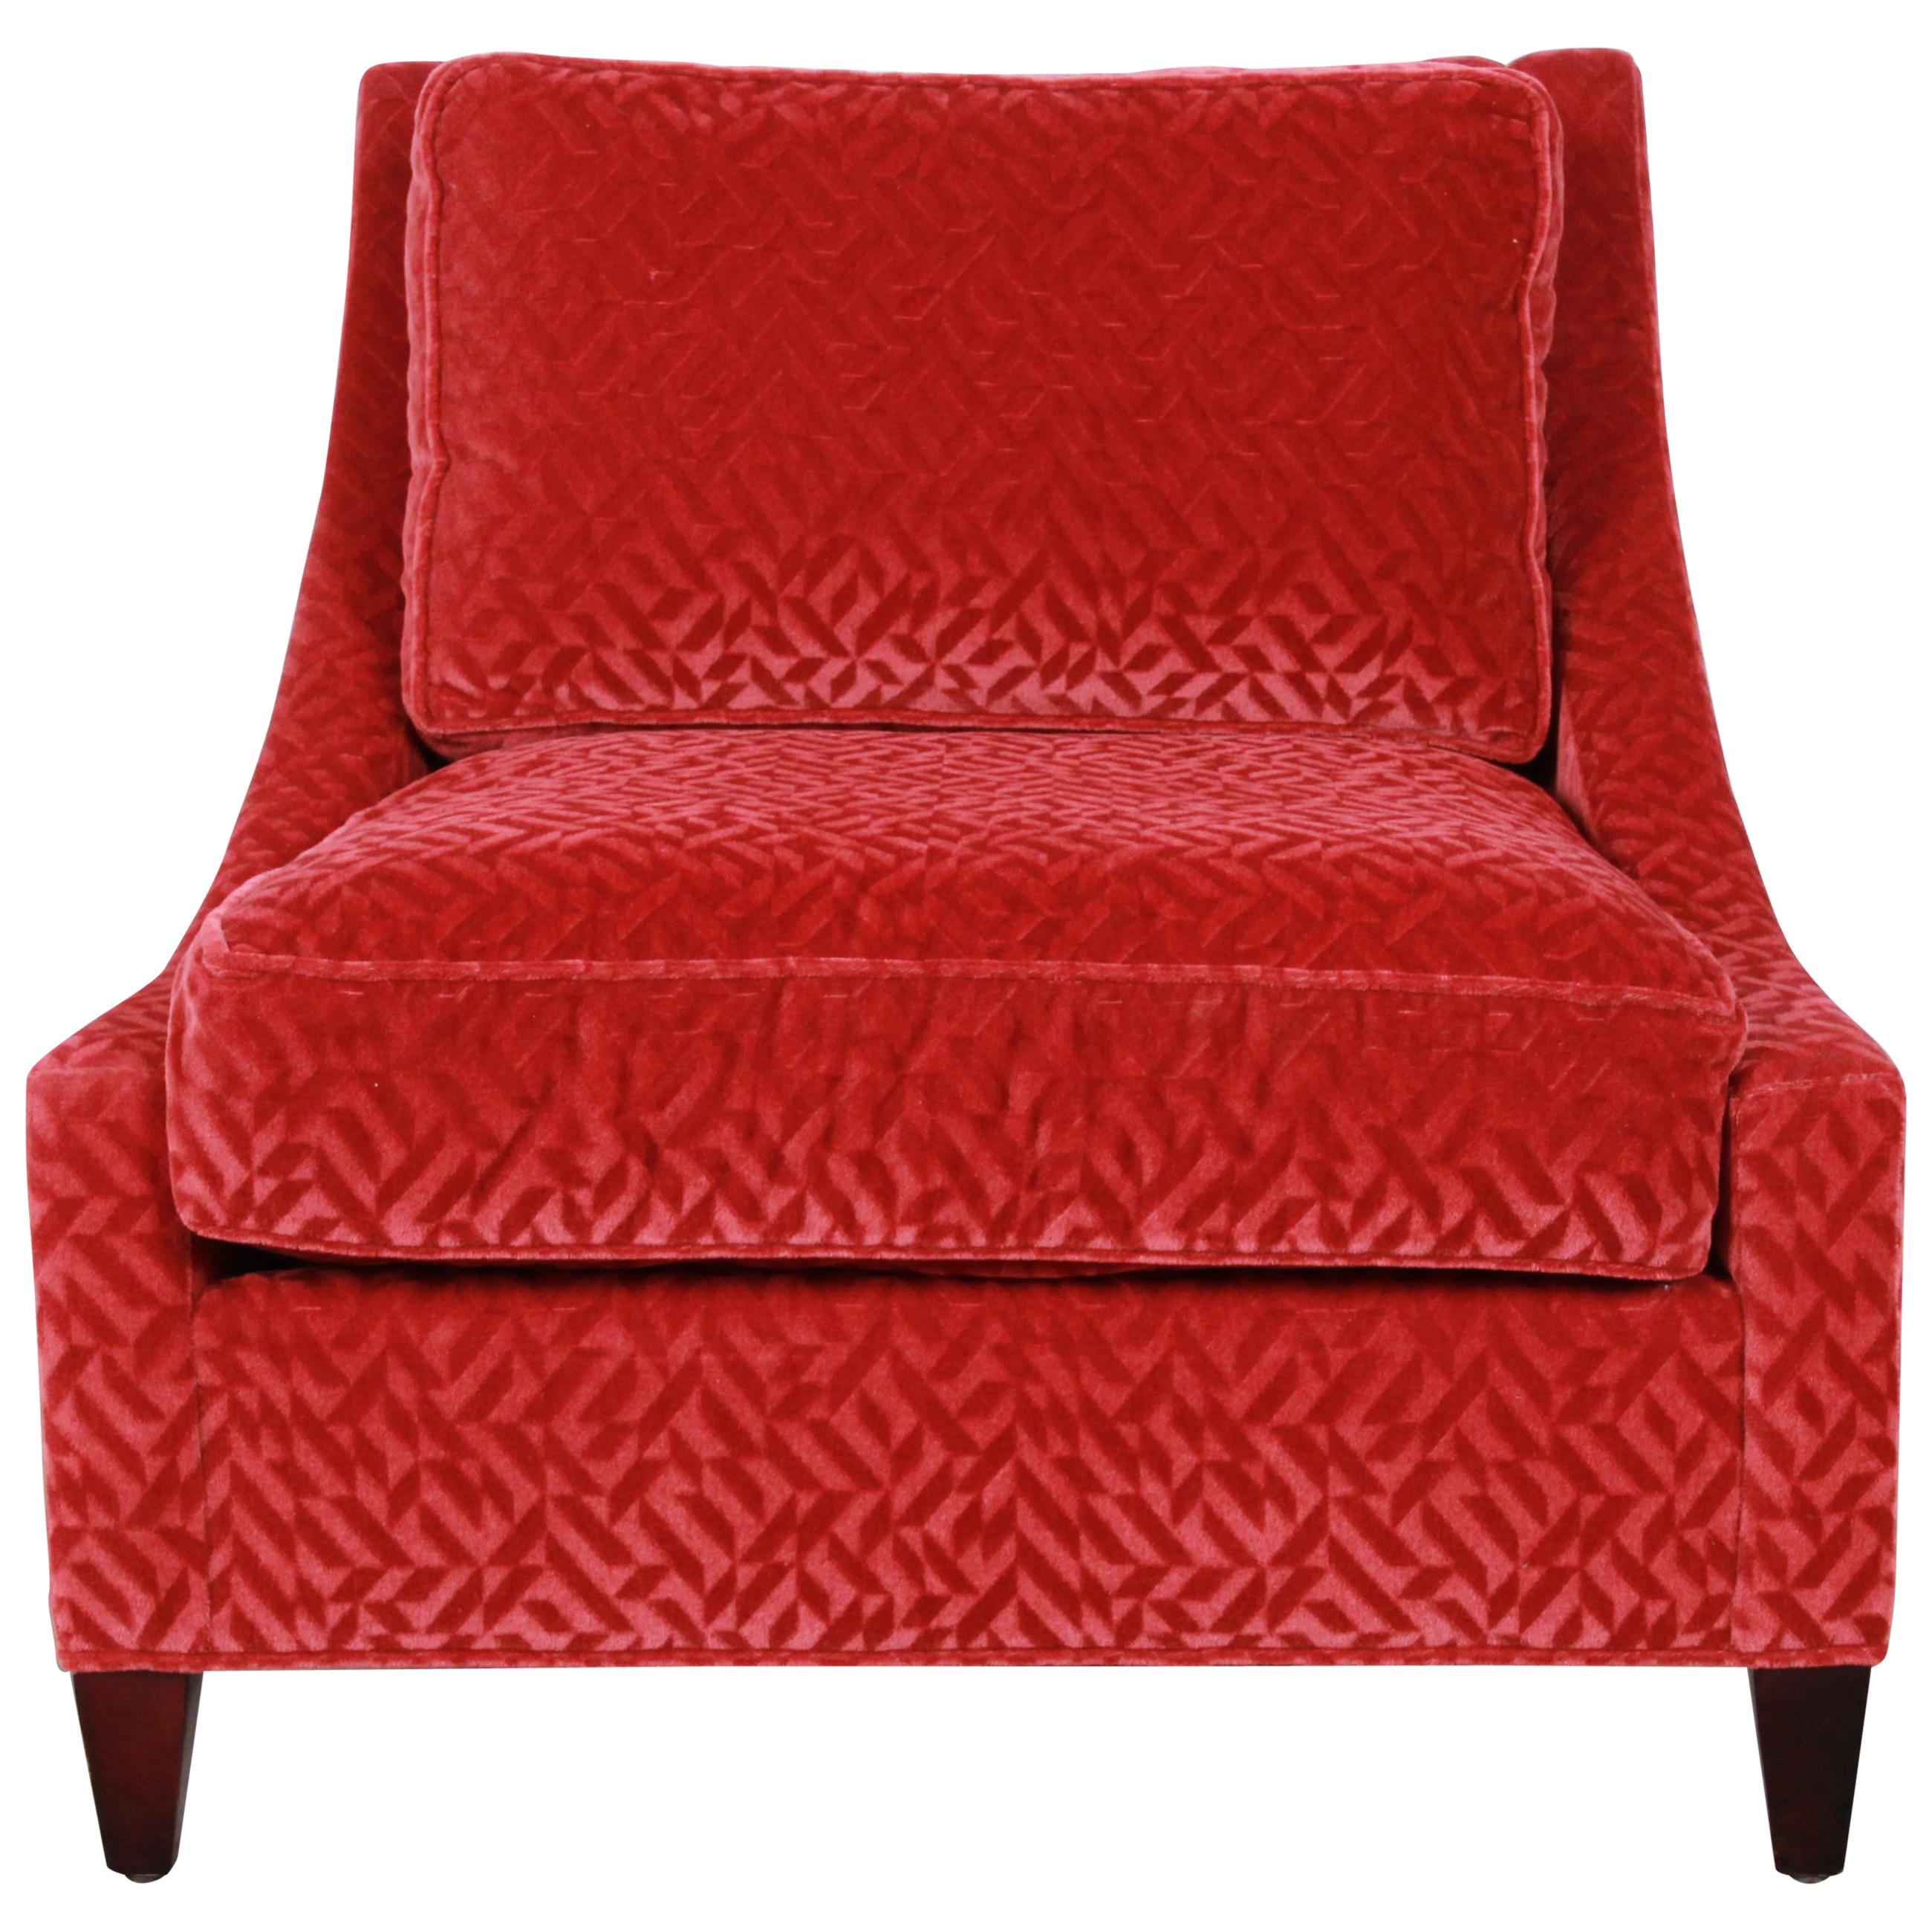 Baker Furniture Lounge Chair in Red Velvet Upholstery